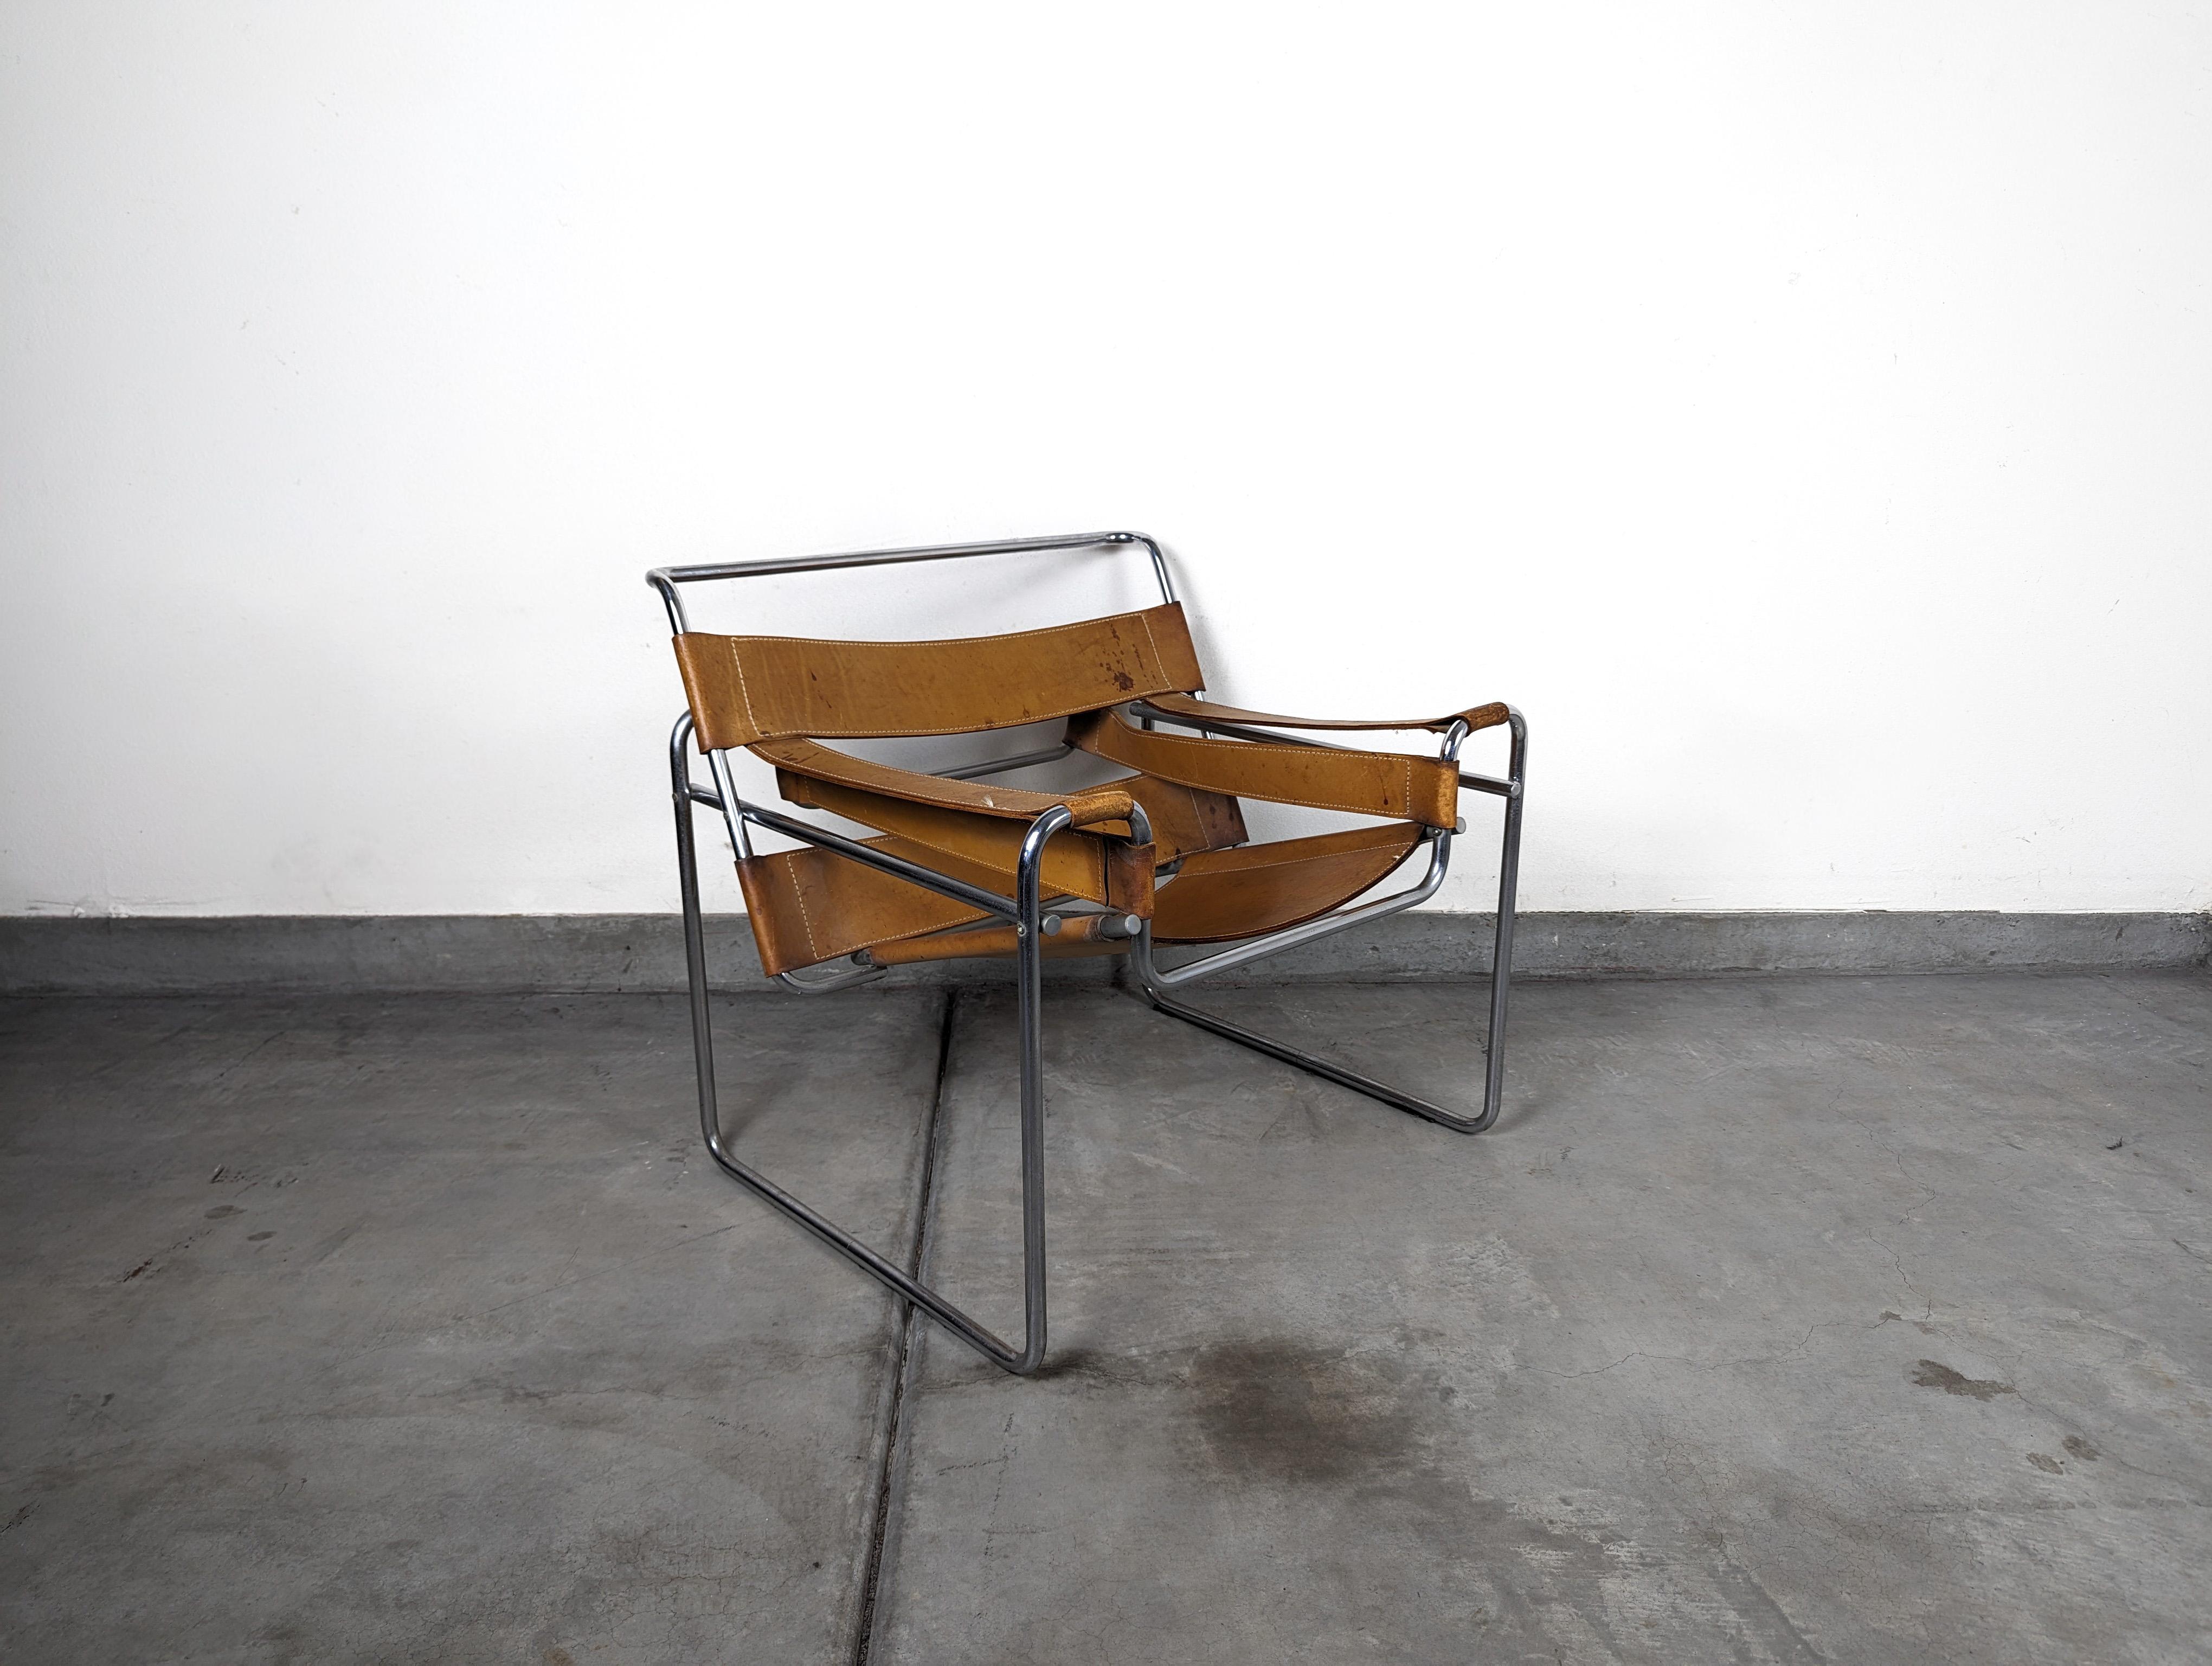 Nous proposons à la vente une authentique chaise Wassily du milieu du siècle, une pièce remarquable de l'emblématique designer Marcel Breuer. Cette chaise témoigne de l'attrait durable du design du milieu du siècle, mettant en valeur les lignes